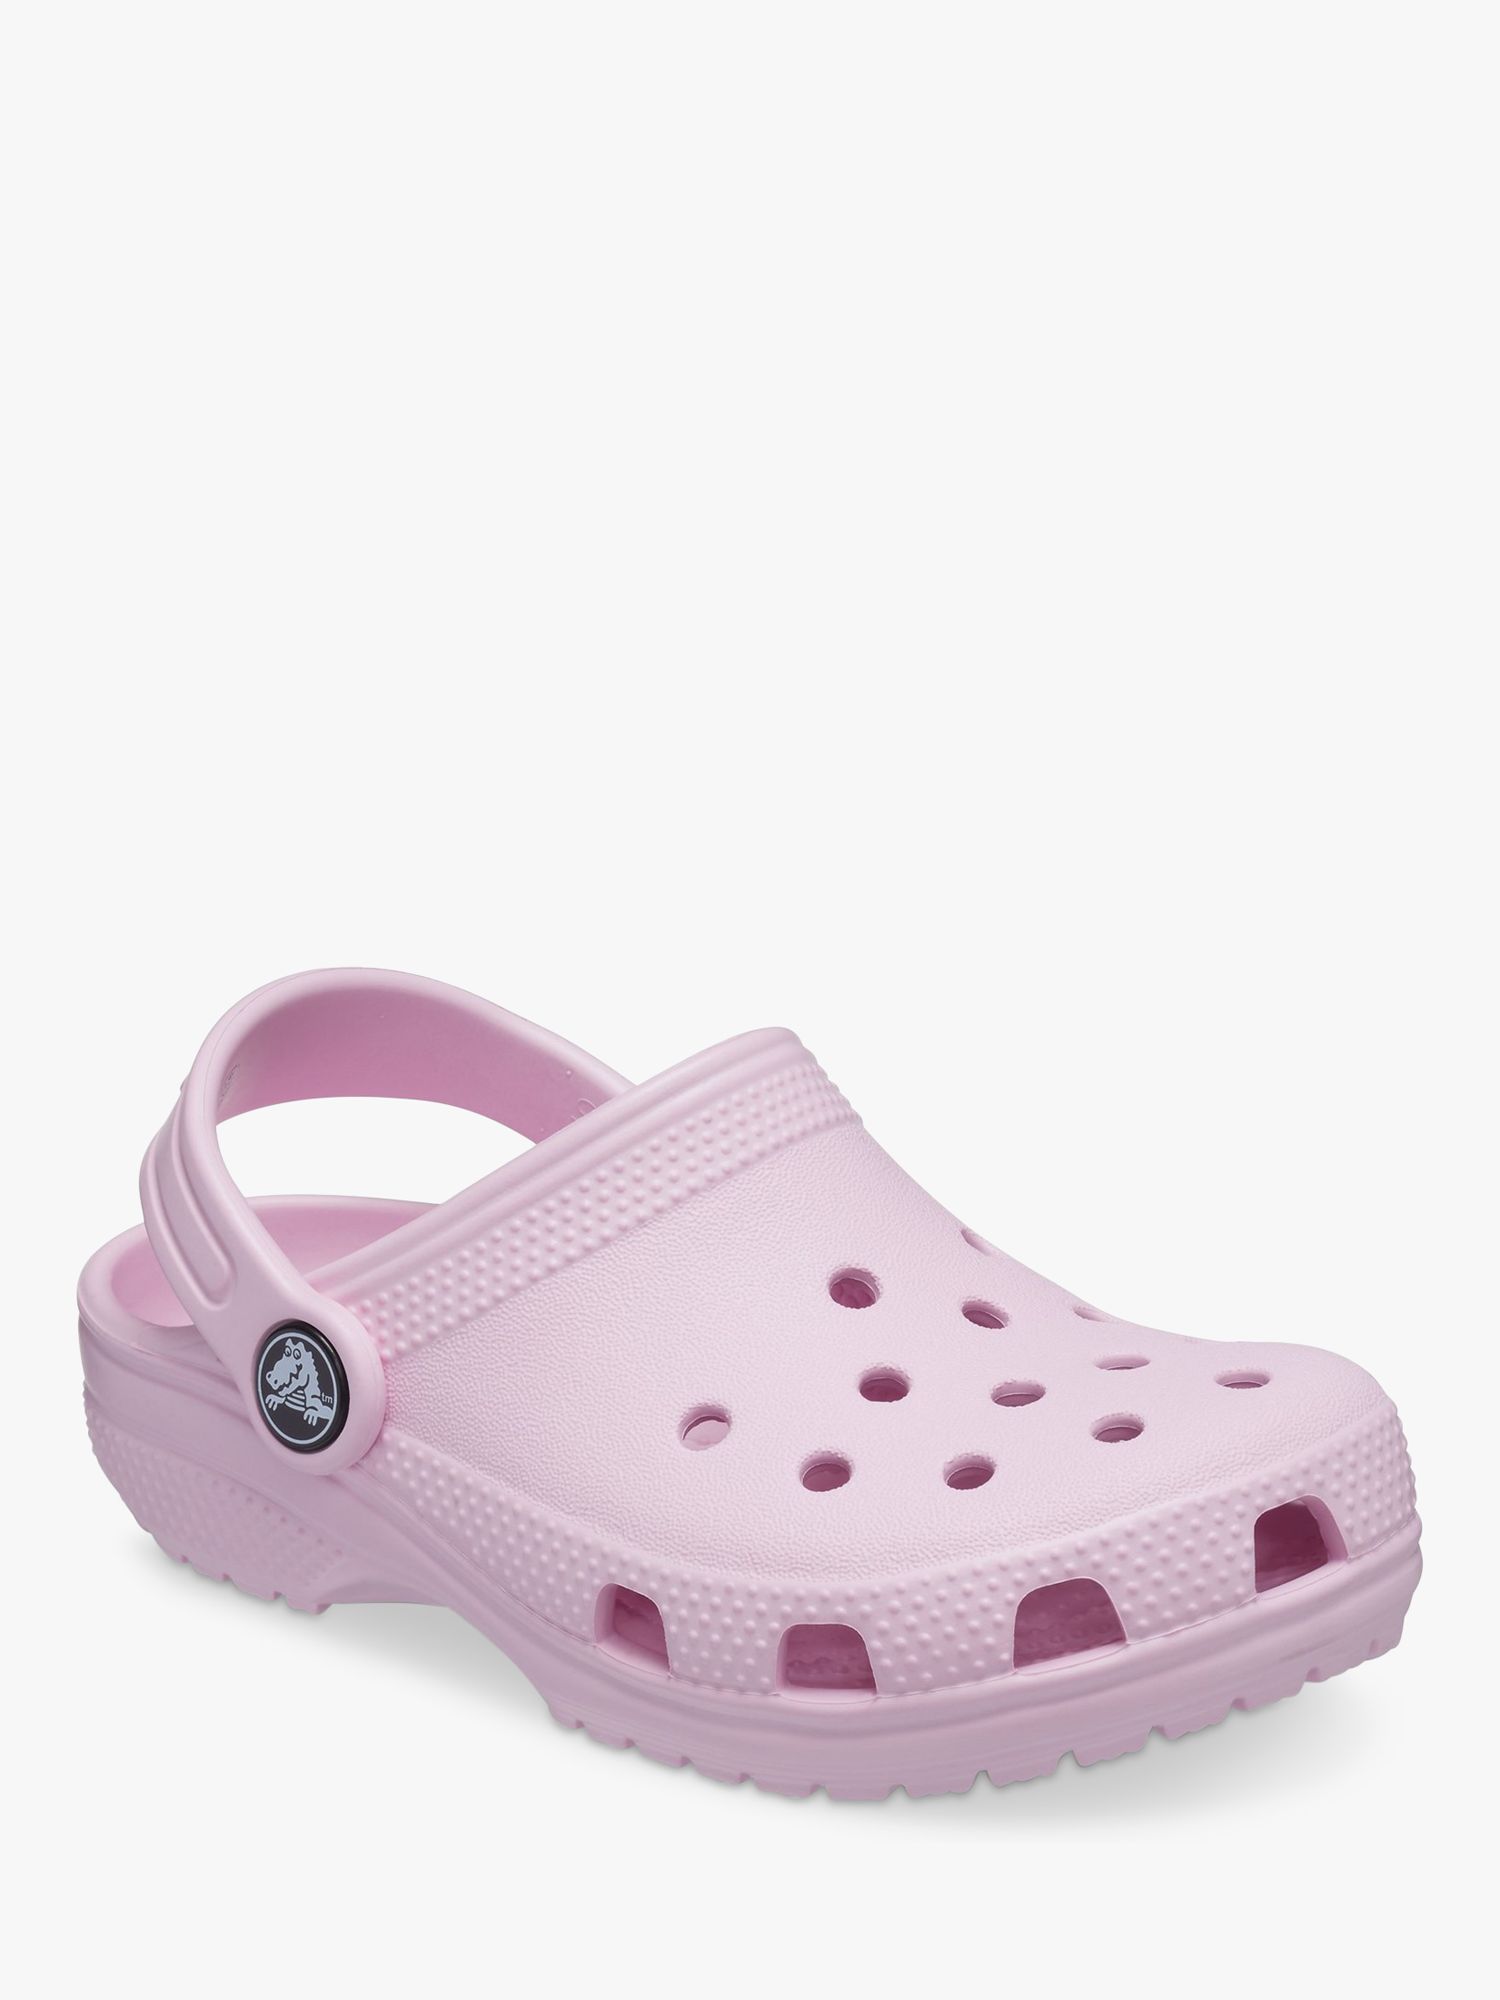 Crocs Kids' Classic Croc Clogs, Pale Pink, 4 Jnr